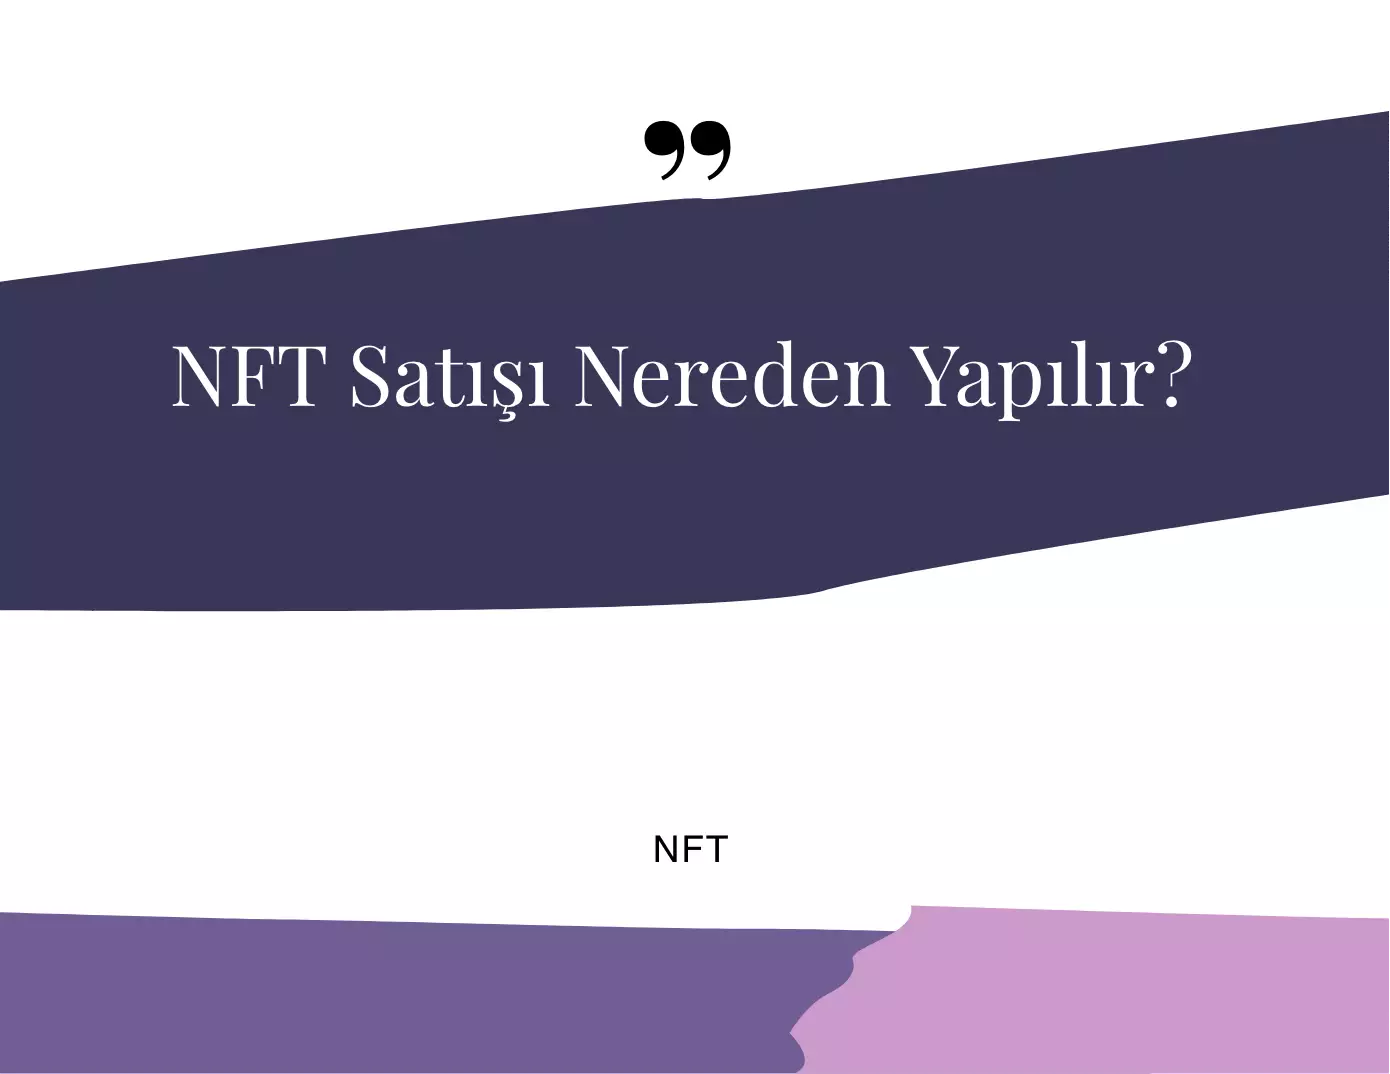 NFT Satışı Nereden Yapılır?